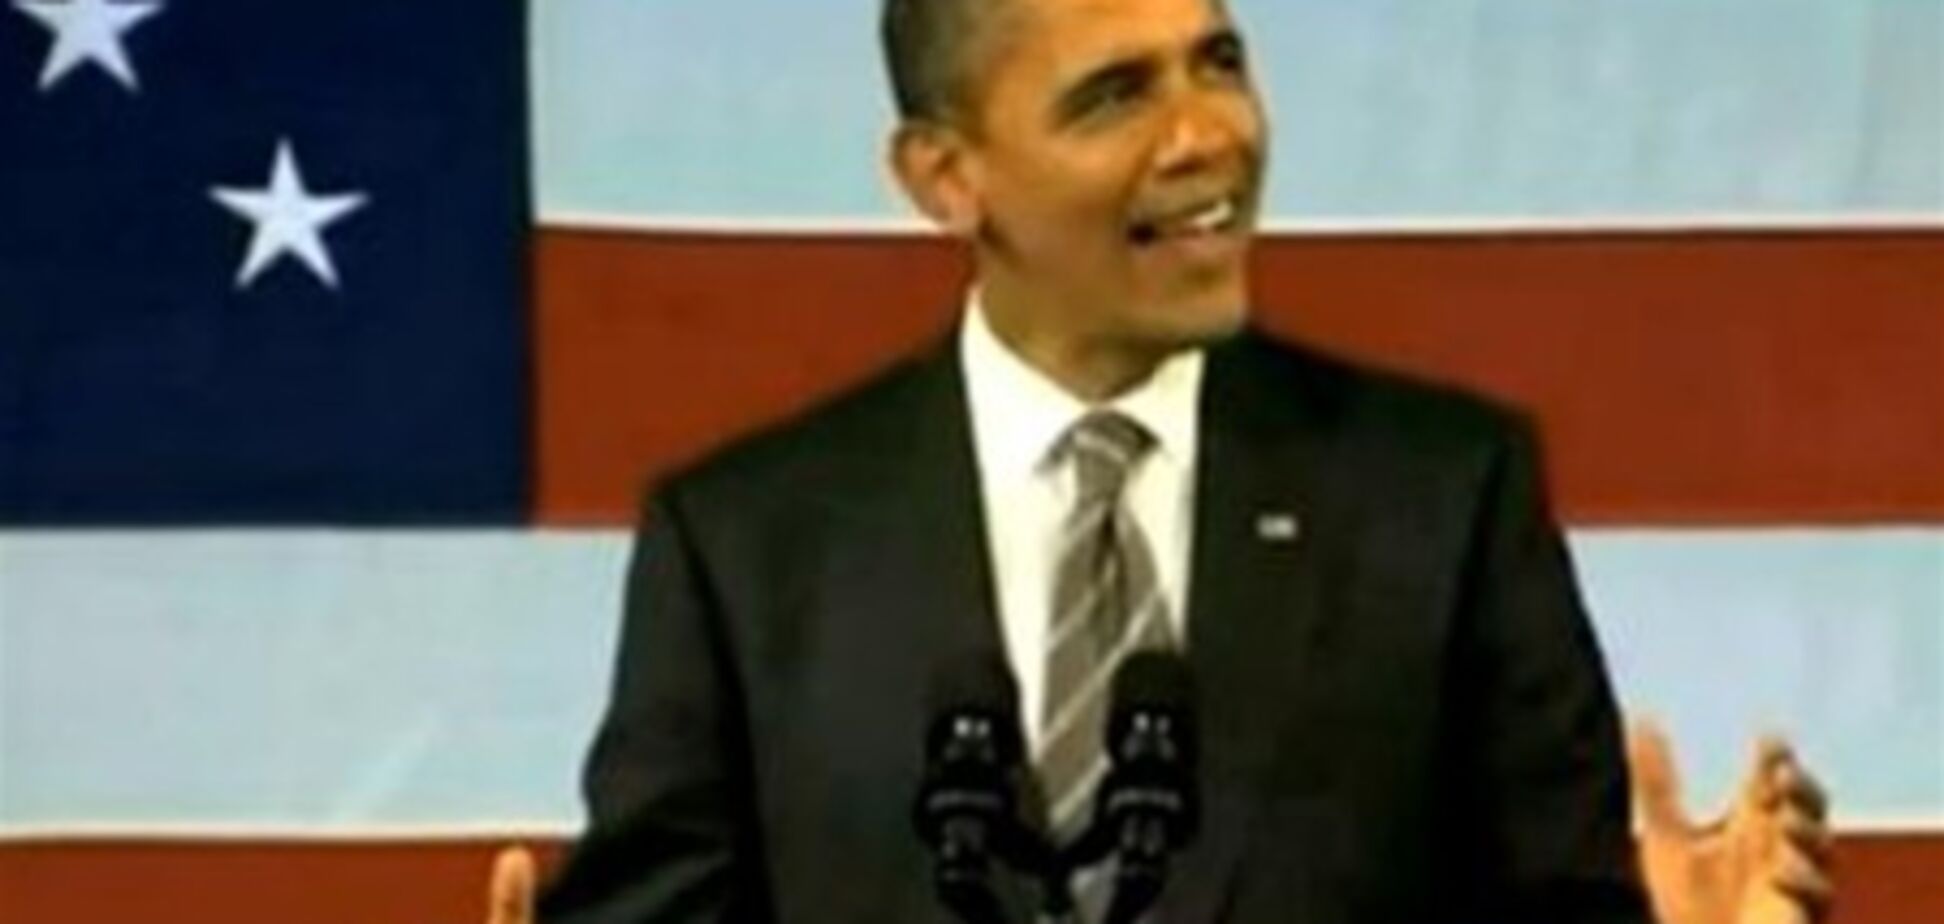 Обама спел о любви на встрече с избирателями. Видео